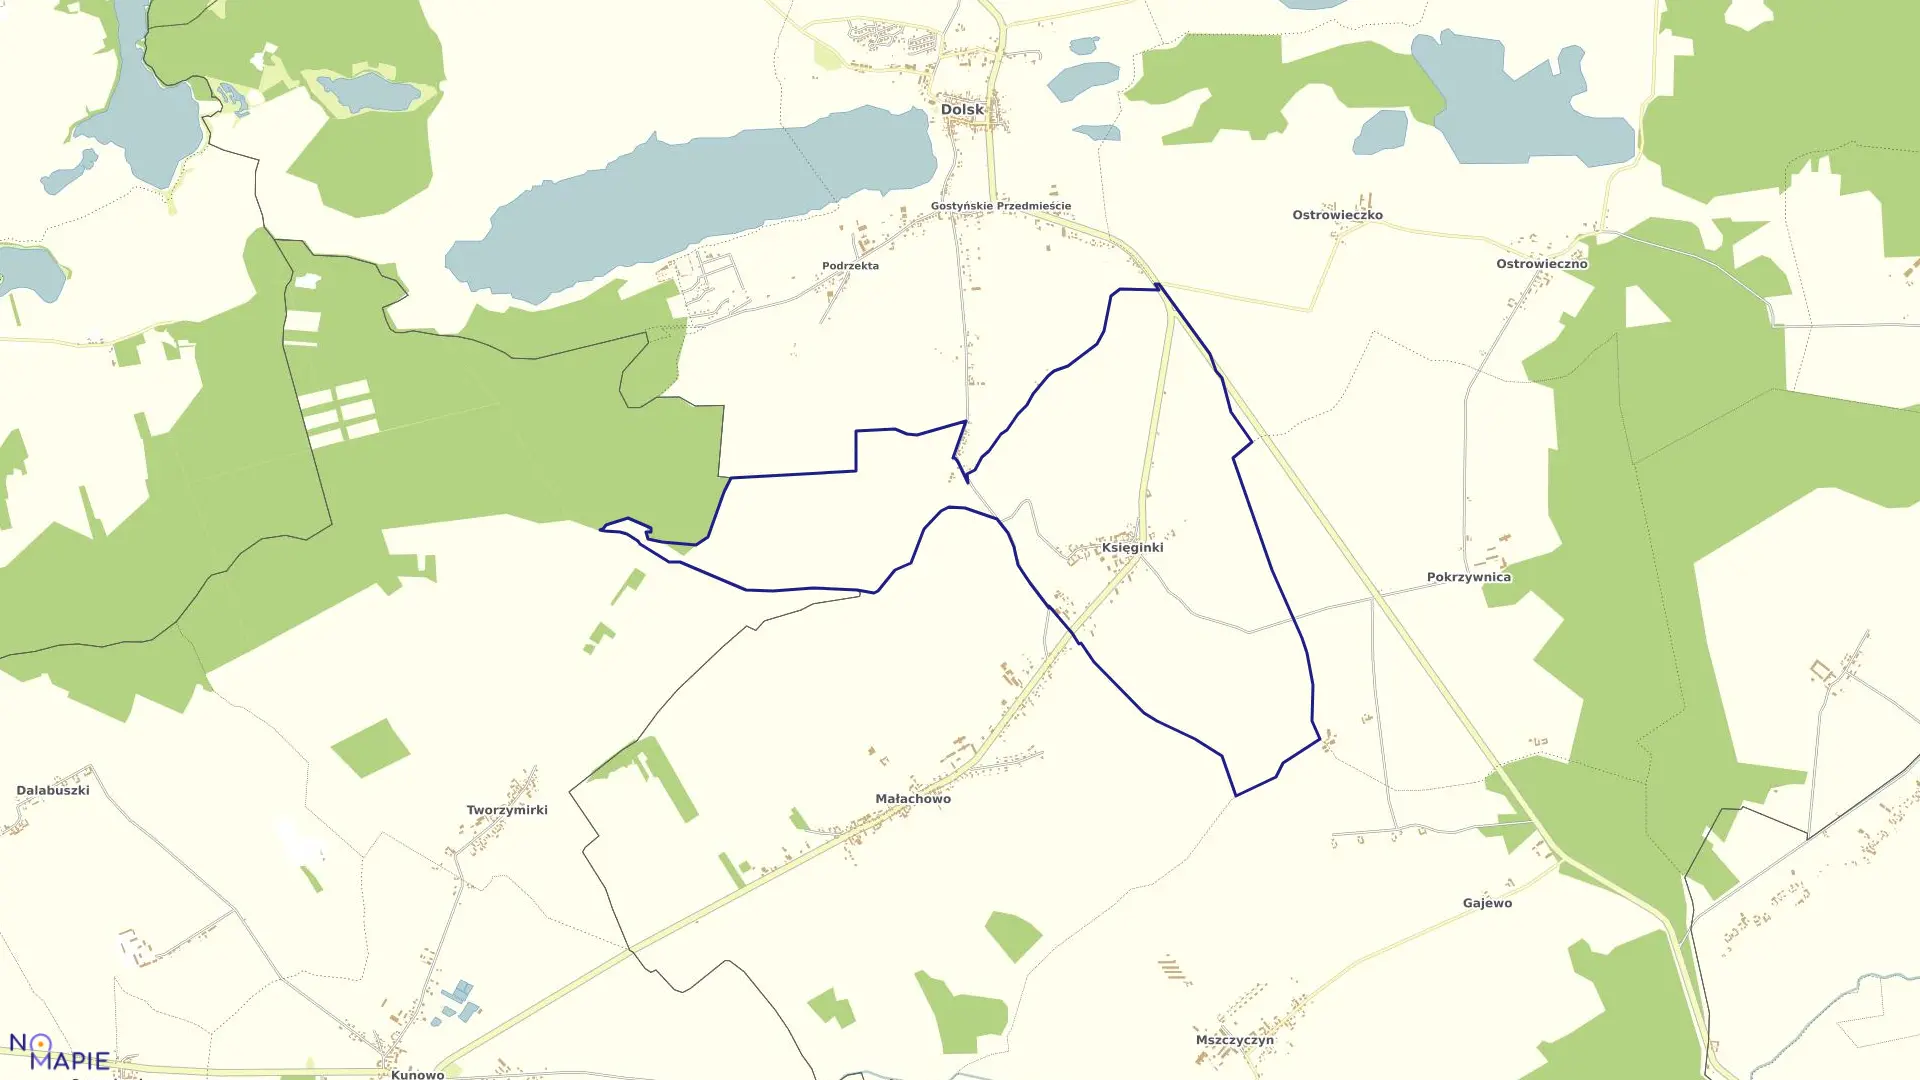 Mapa obrębu KSIĘGINKI w gminie Dolsk